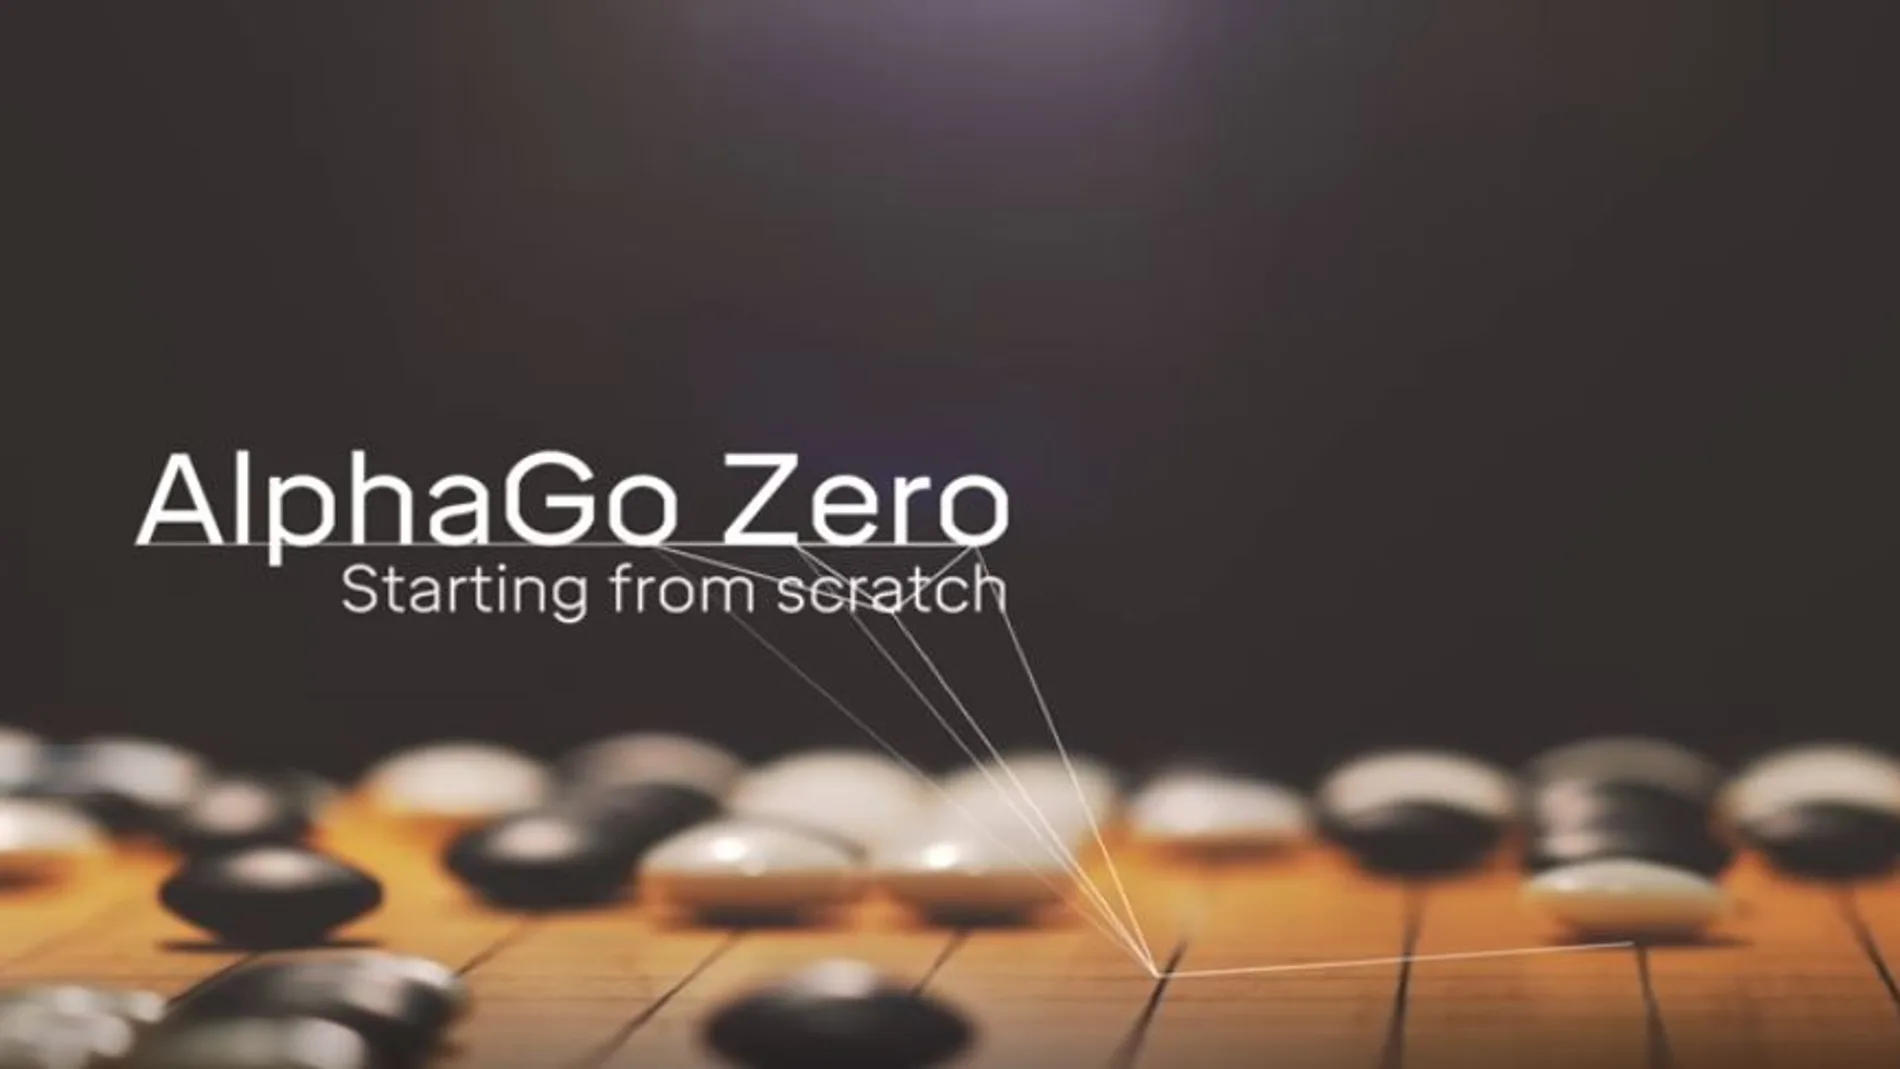 El nuevo ejemplo de Inteligencia Artificial AlphaGo Zero